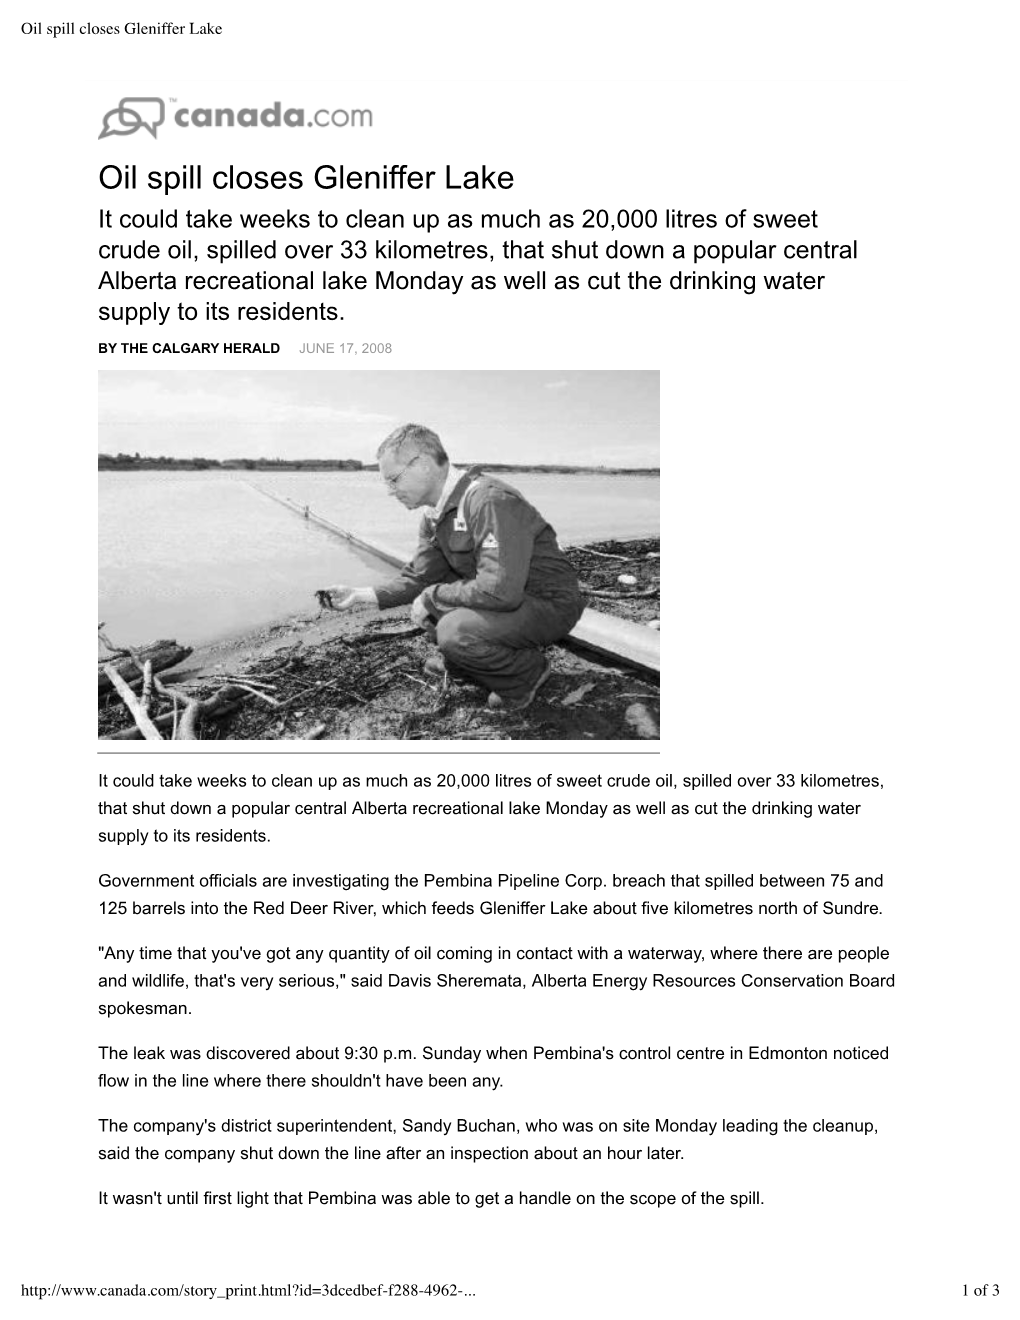 Oil Spill Closes Gleniffer Lake